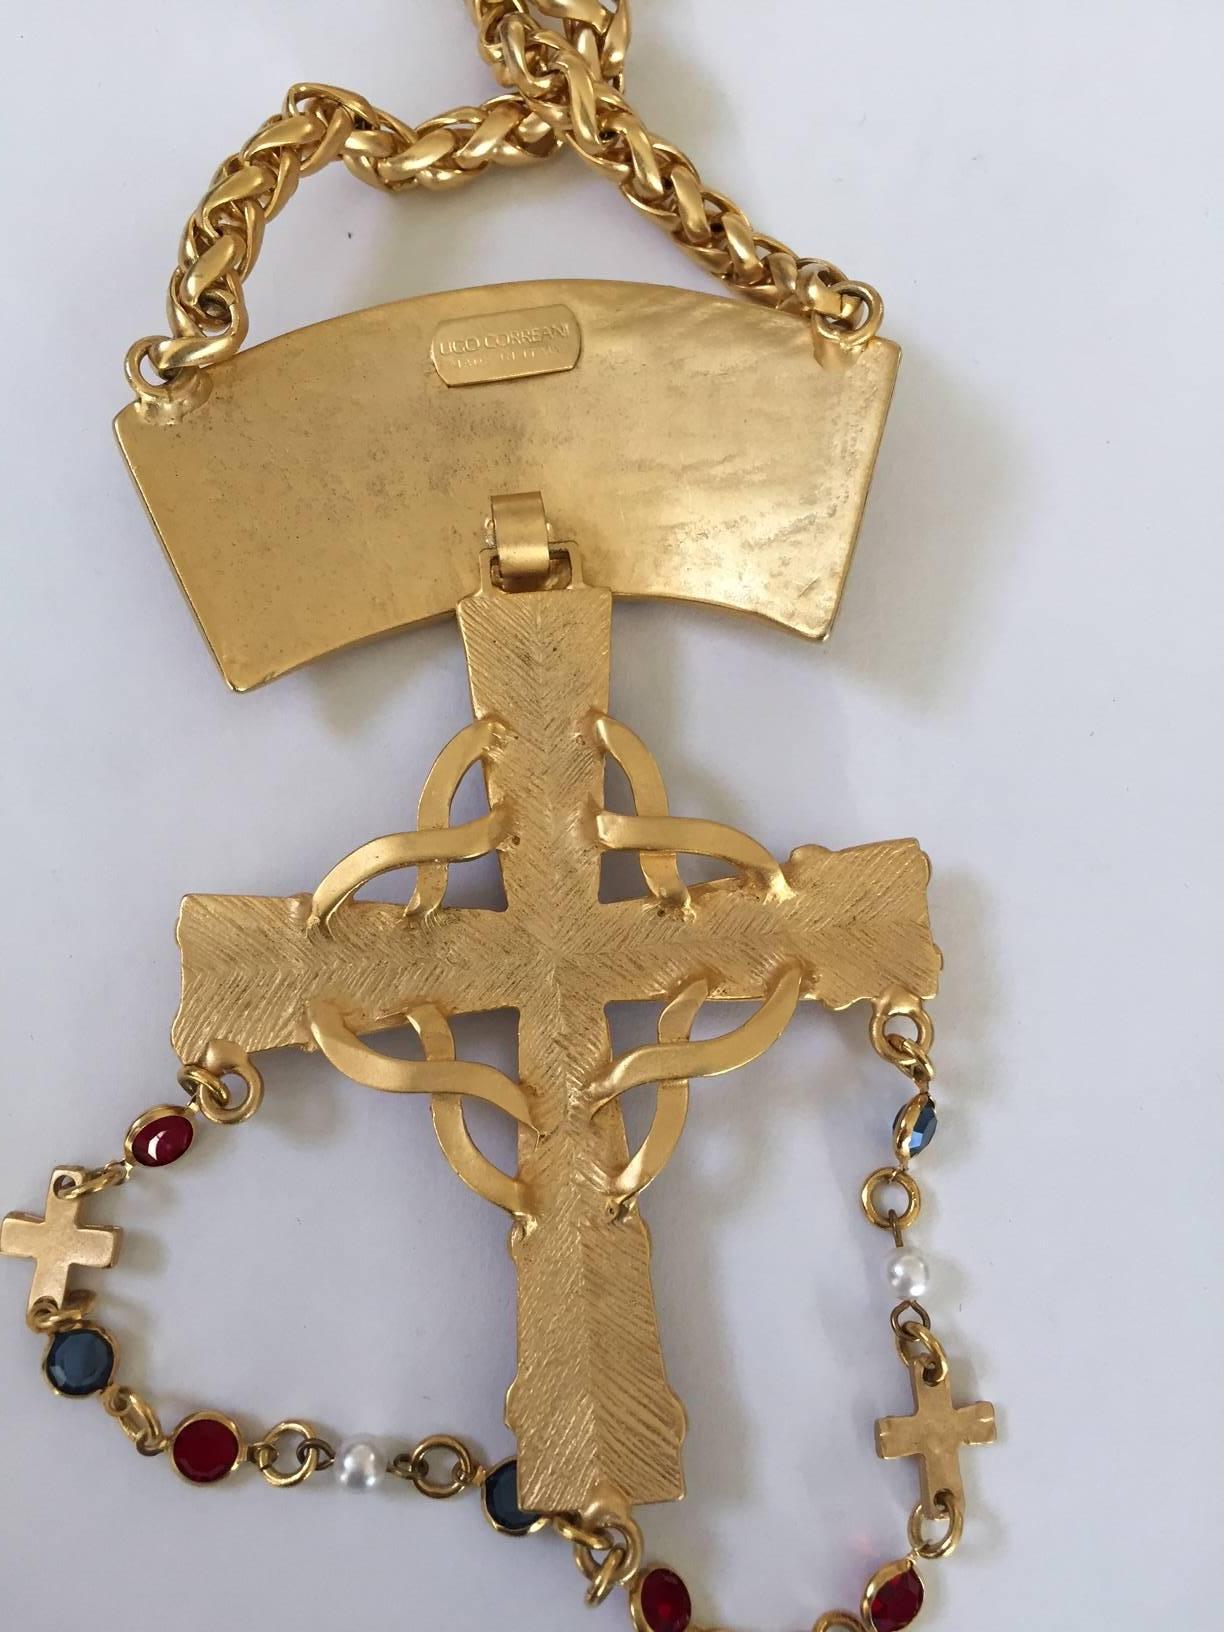 Schöne Ugo Correani Kreuz Anhänger Kette Halskette für späten Gianni Versace entworfen. geschliffenen Glassteinen.
Messung: 
30